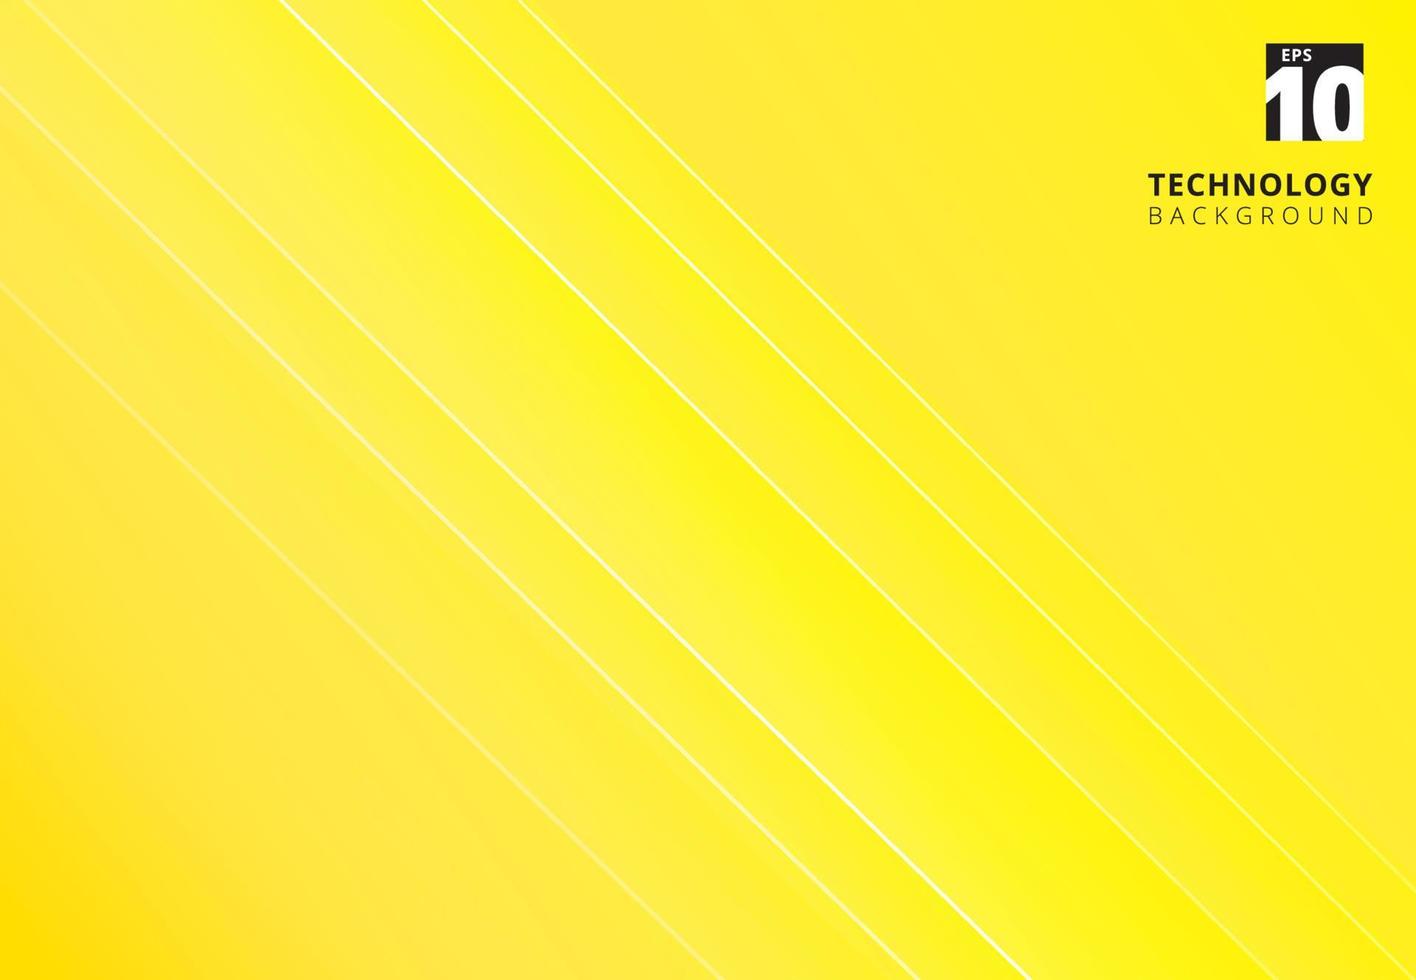 immagine gialla astratta che raffigura la tecnologia con linee diagonali sovrapposte. vettore